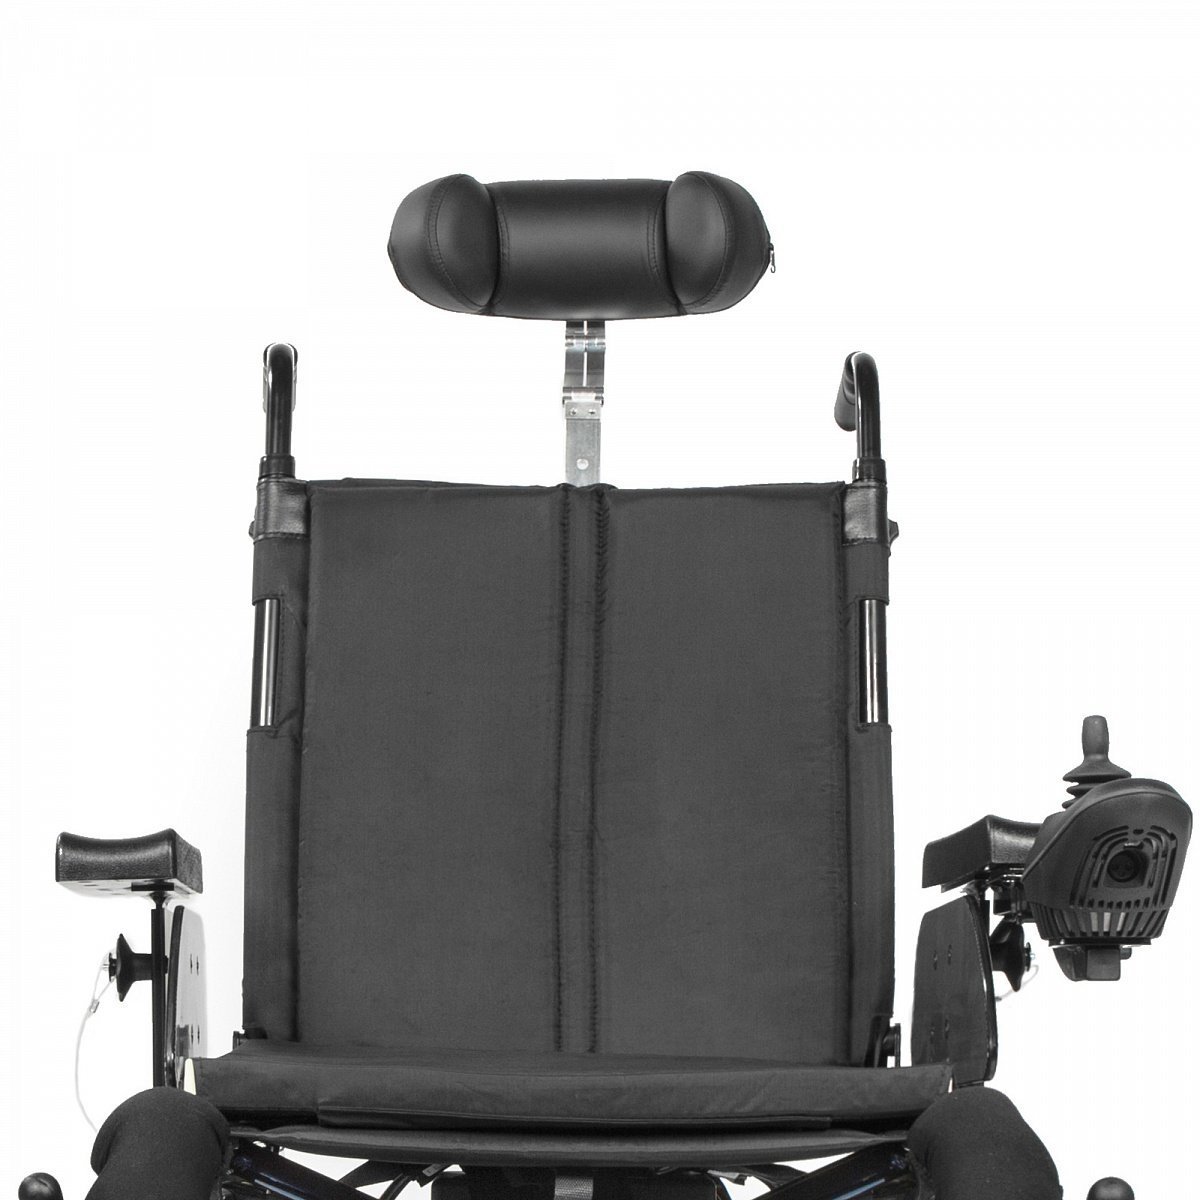 Коляска инвалидная с электроприводом Ortonica Pulse 170 предназначена для самостоятельного передвижения (в помещениях и на дорогах с твердым покрытием) инвалидов с заболеваниями опорно-двигательного аппарата и повреждениями нижних конечностей